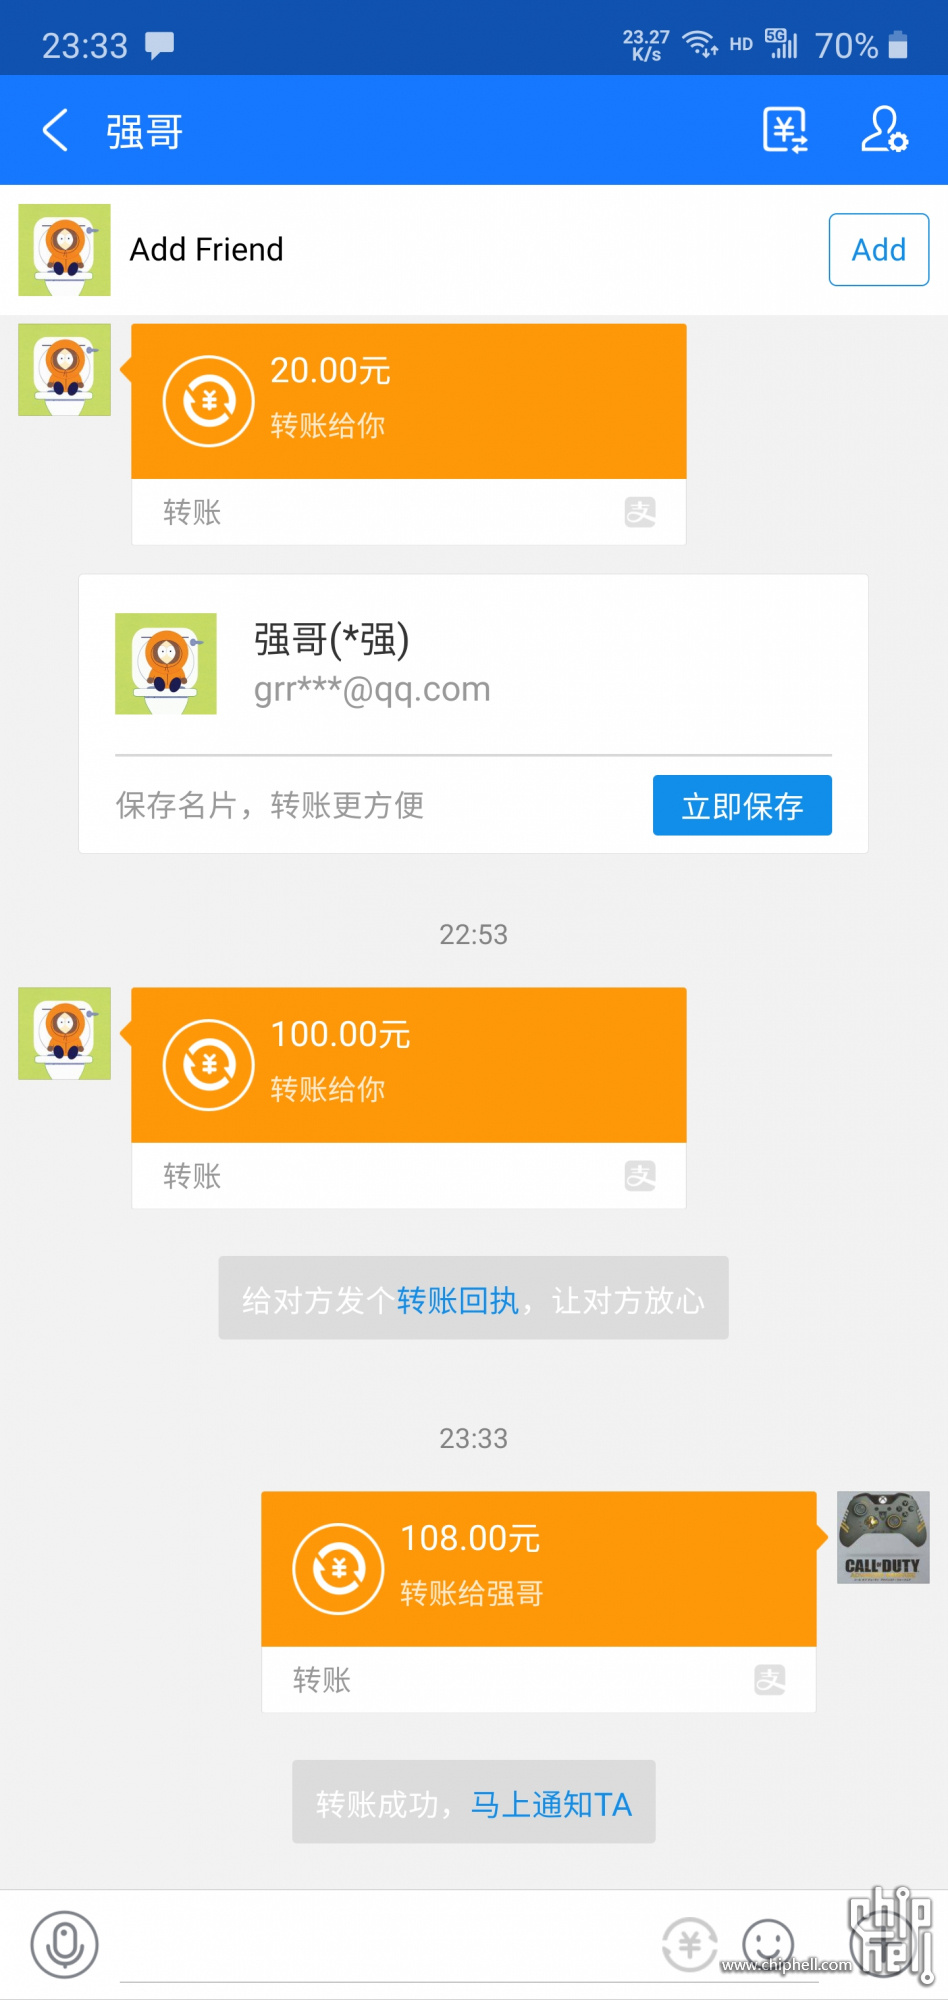 WeChat Image_20200611233353.jpg